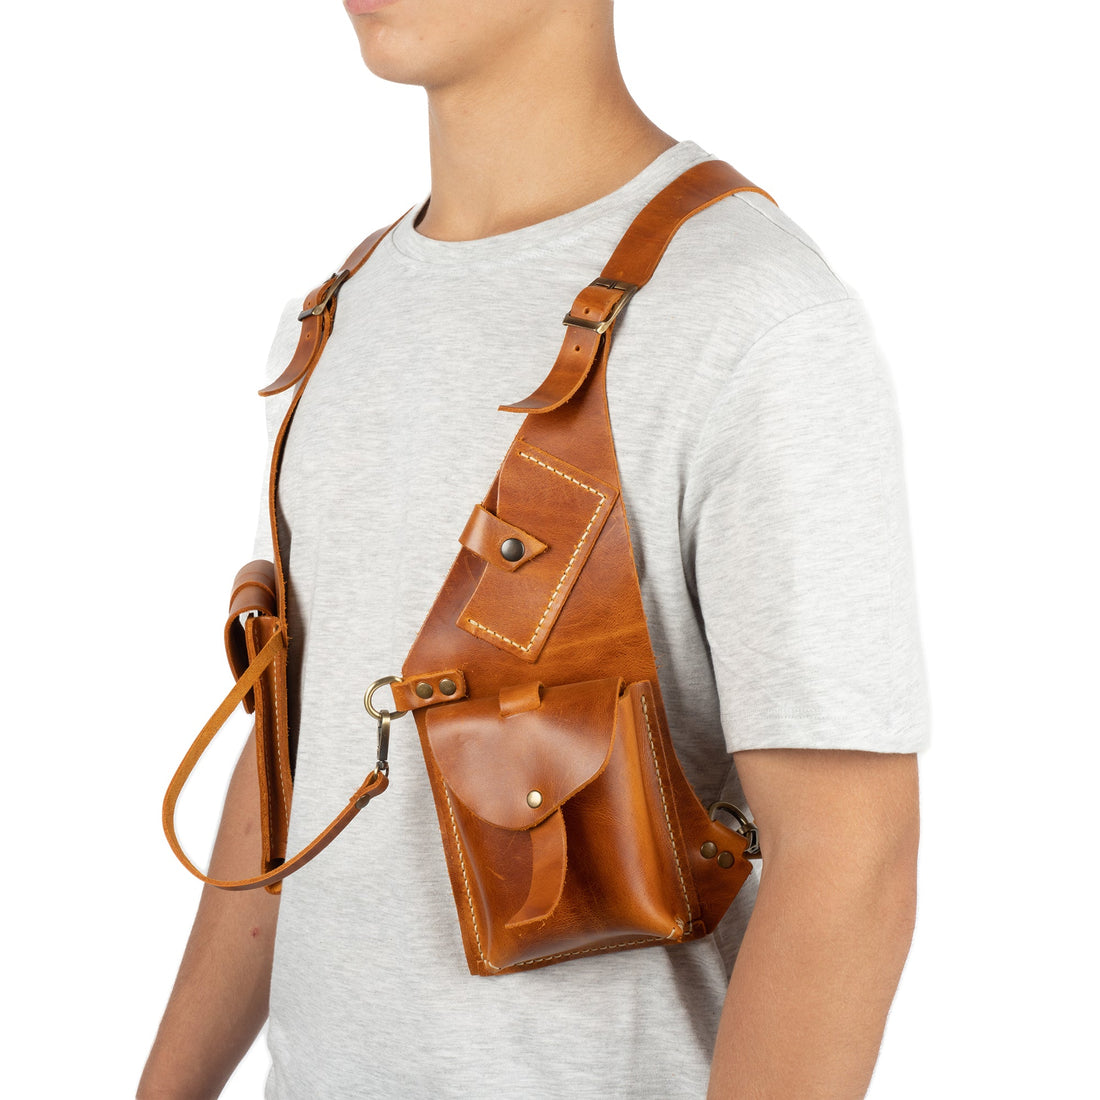 Tan Regulus Shoulder Leather Holster With Pocket - Zengoda Shop online from Artisan Brands